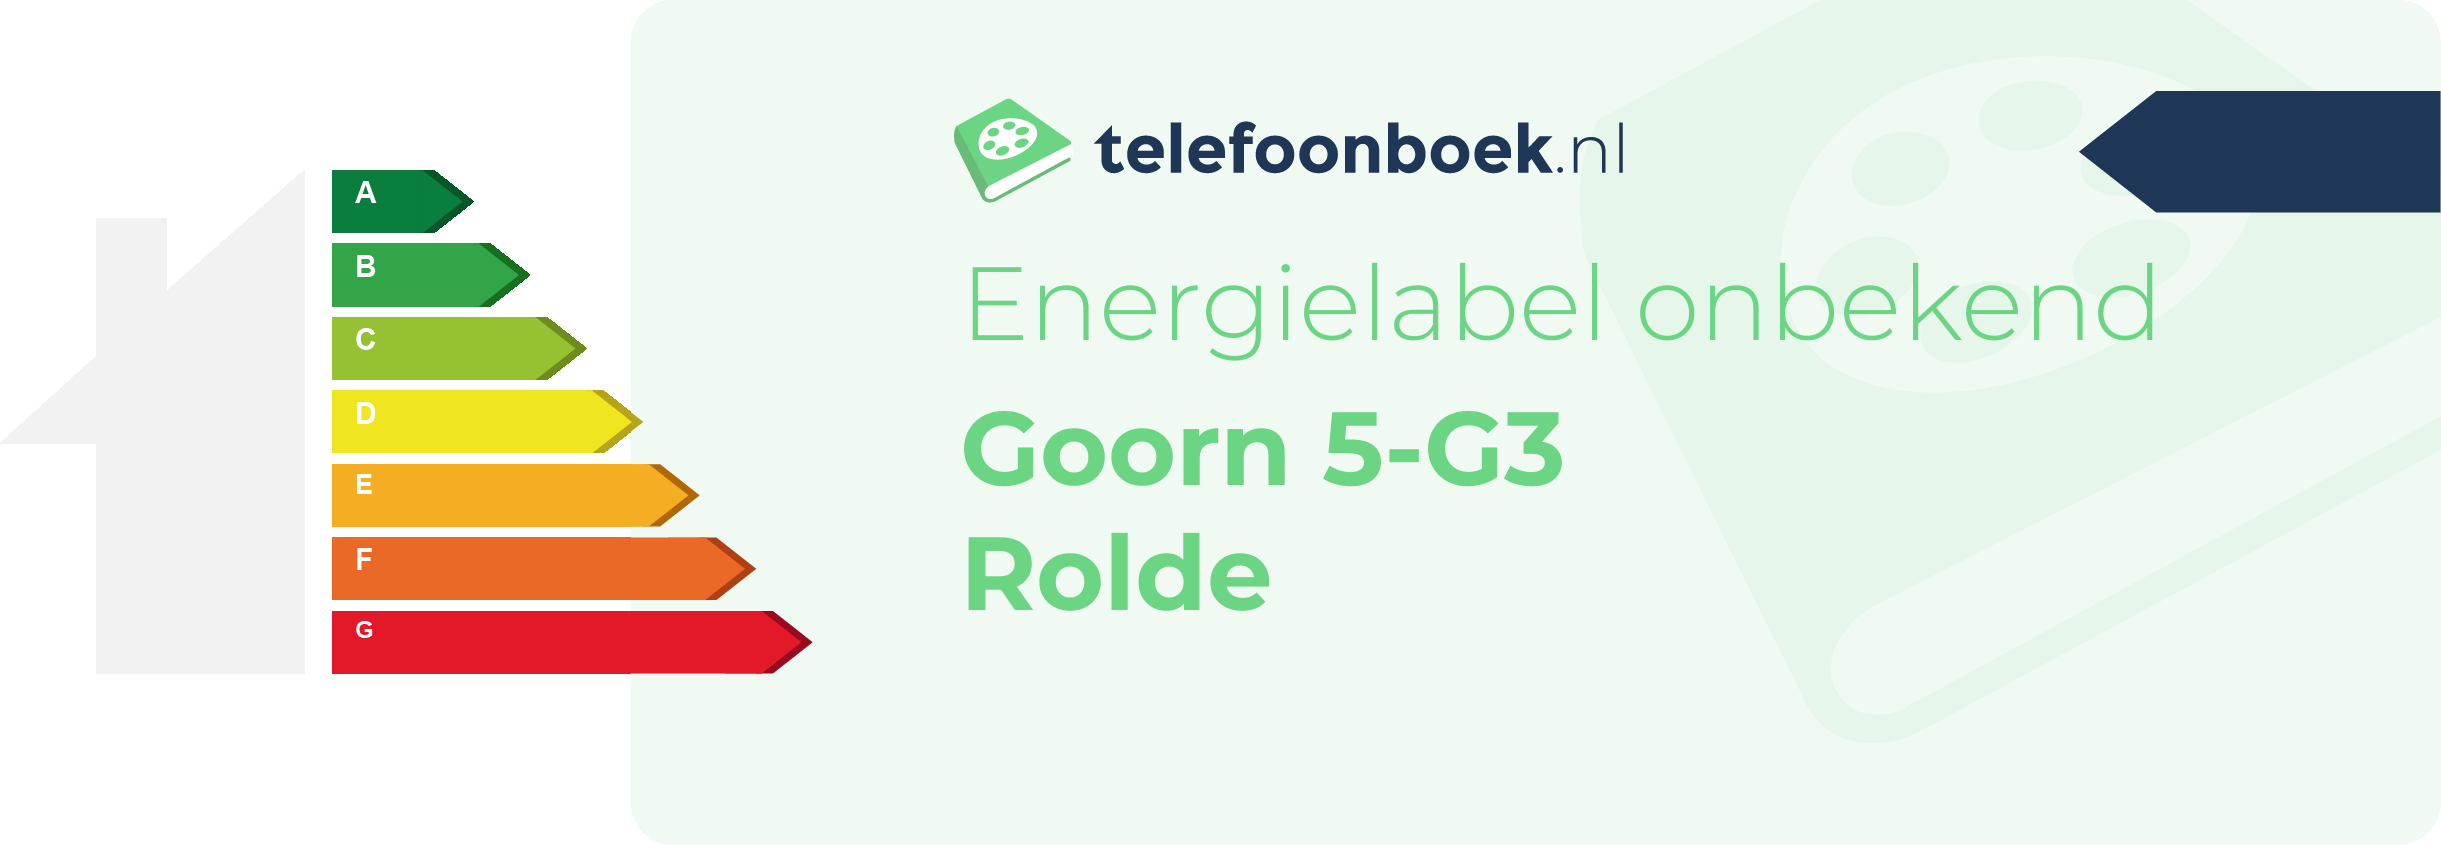 Energielabel Goorn 5-G3 Rolde